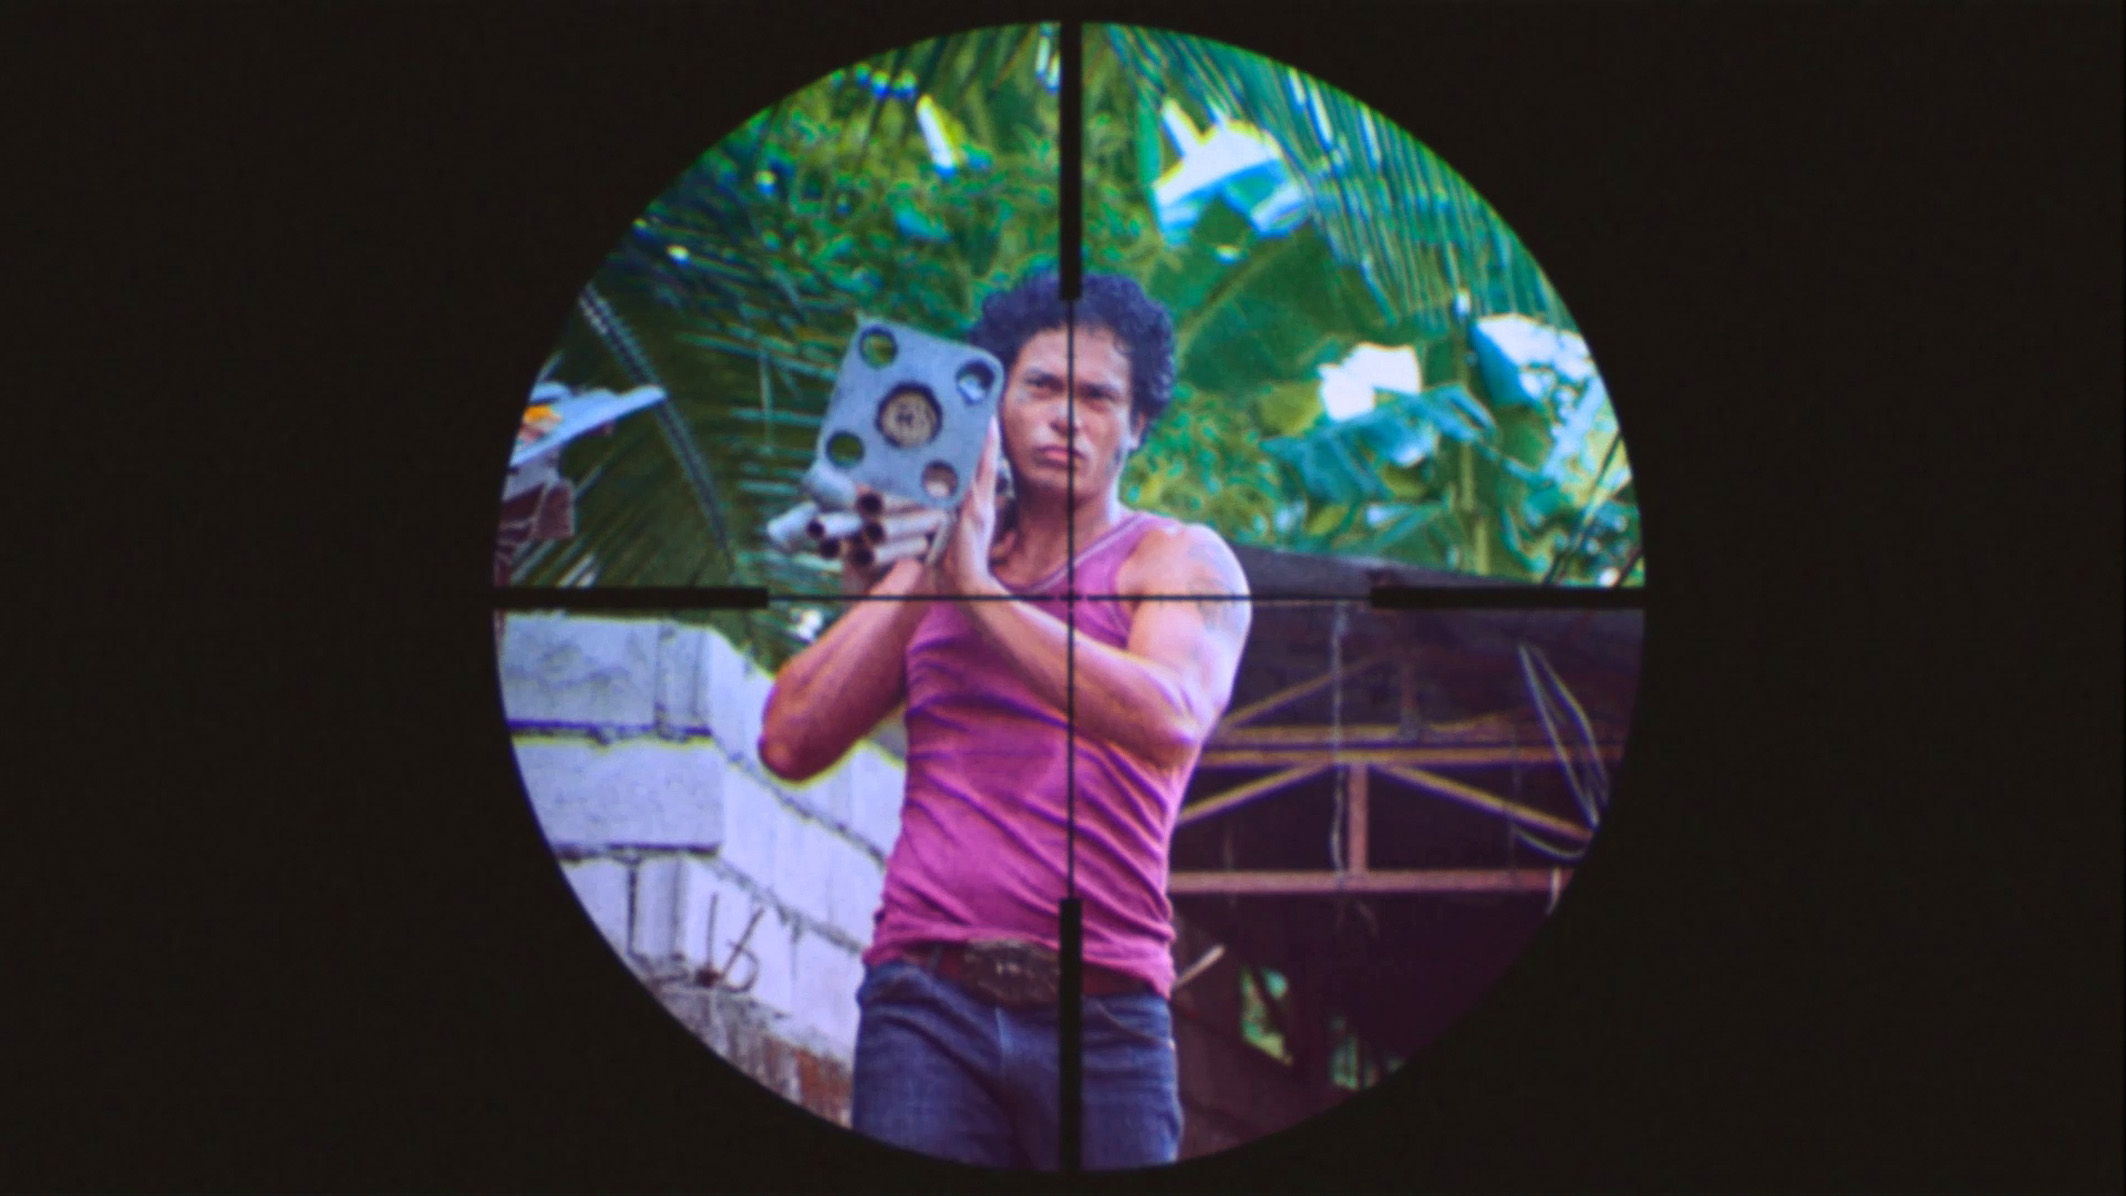 Cena do filme Leonor Jamais Morrerá mostra um homem filipino carregando canos no ombro direito. Ele veste uma regata rosa com calça jeans e tem cabelo preto. Na imagem, vemos a mira de uma arma em cima dele. 